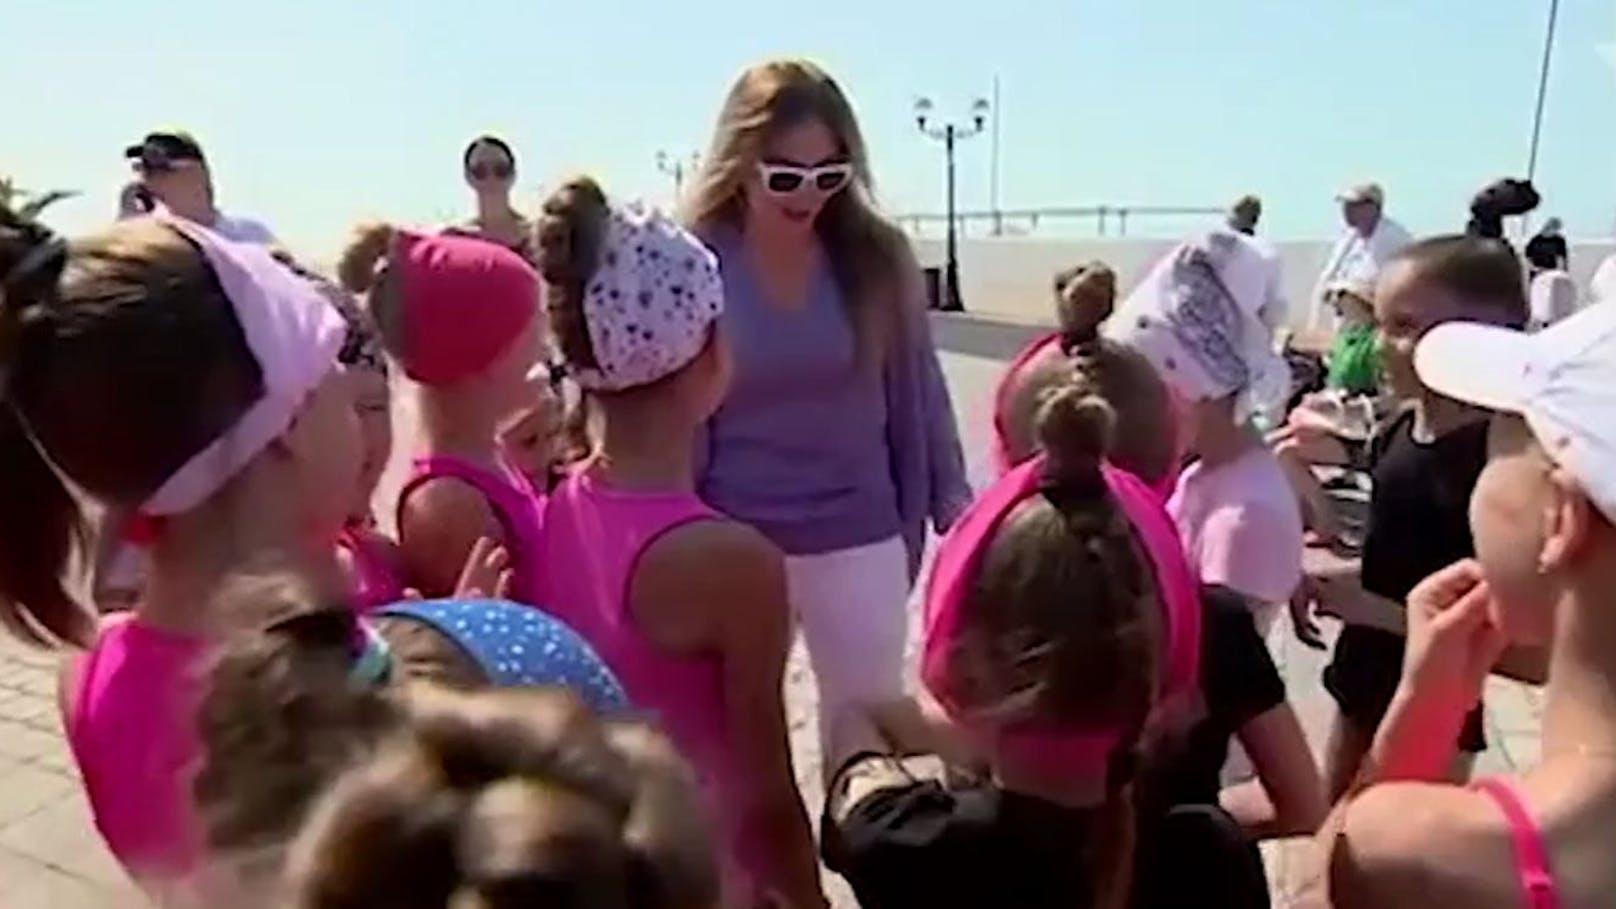 Putin-Geliebte Alina Kabaeva zeigt sich im russischen TV mit jungen Turnerinnen.